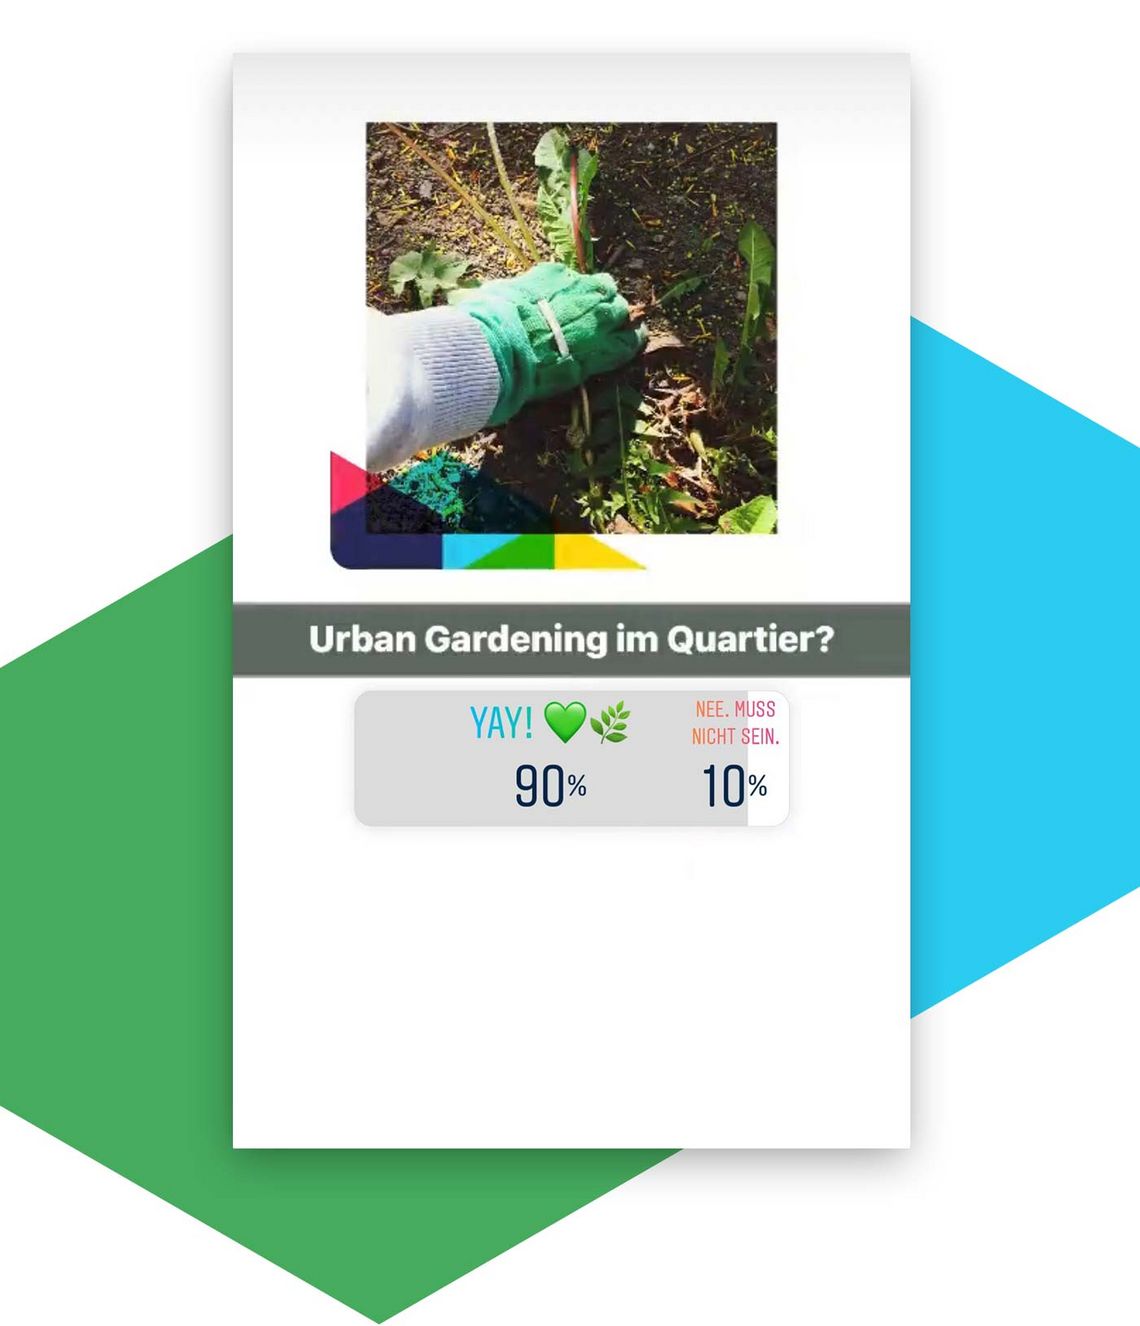 Umfrageergebnis „Urban Gardening im Quartier?" – Ergebnis: 90% Yay!, let’s go / 90% Nee, muss nicht sein!